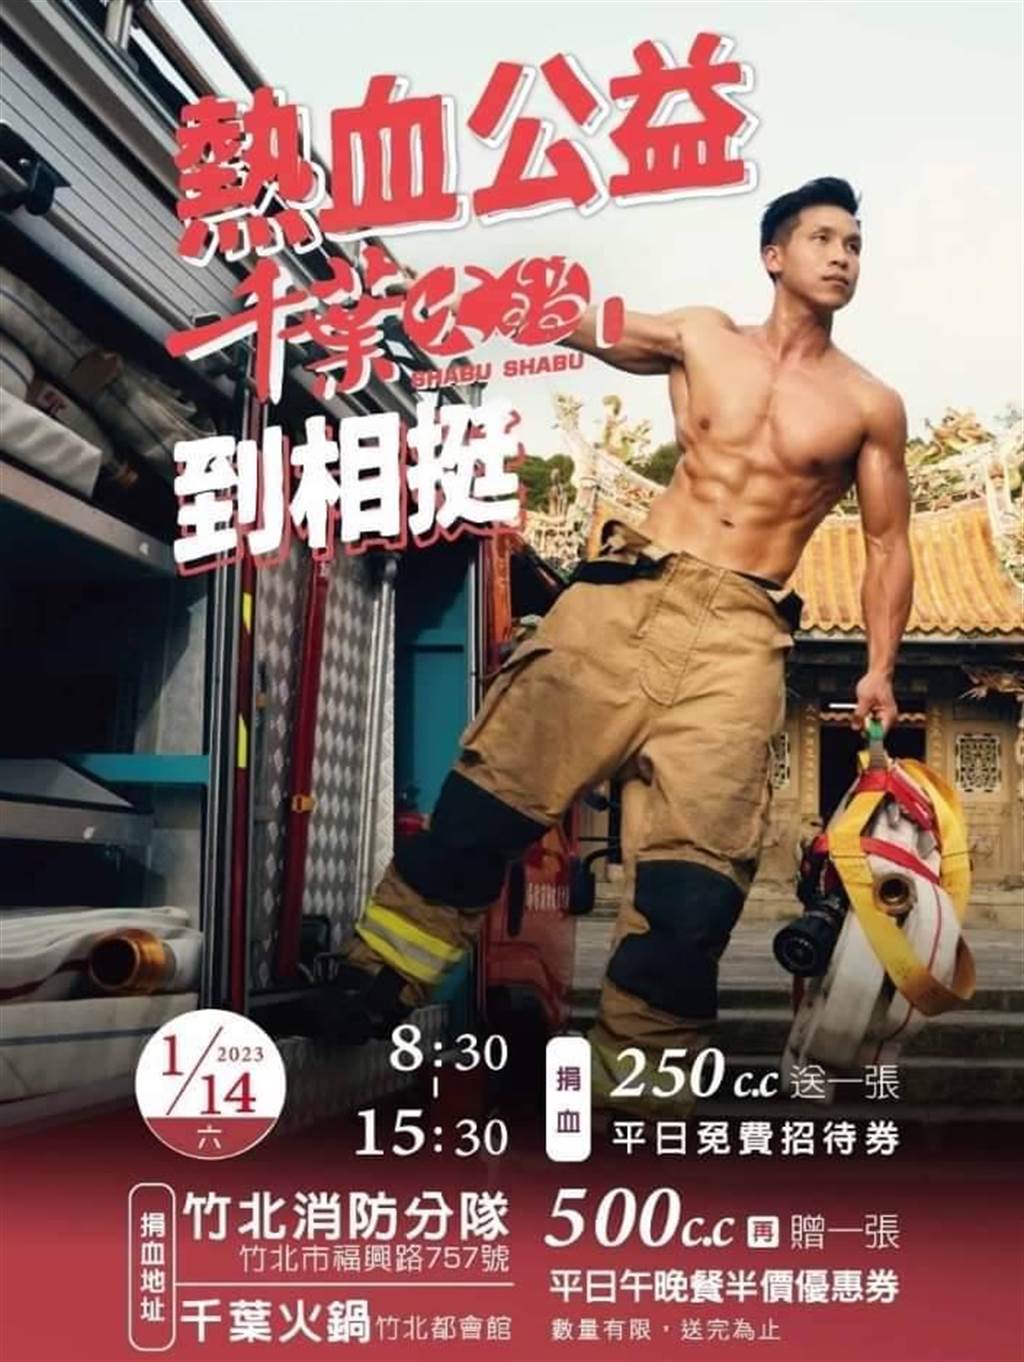 「熱血公益」海報消防員赤裸上身展現一身筋肉勁吸睛。